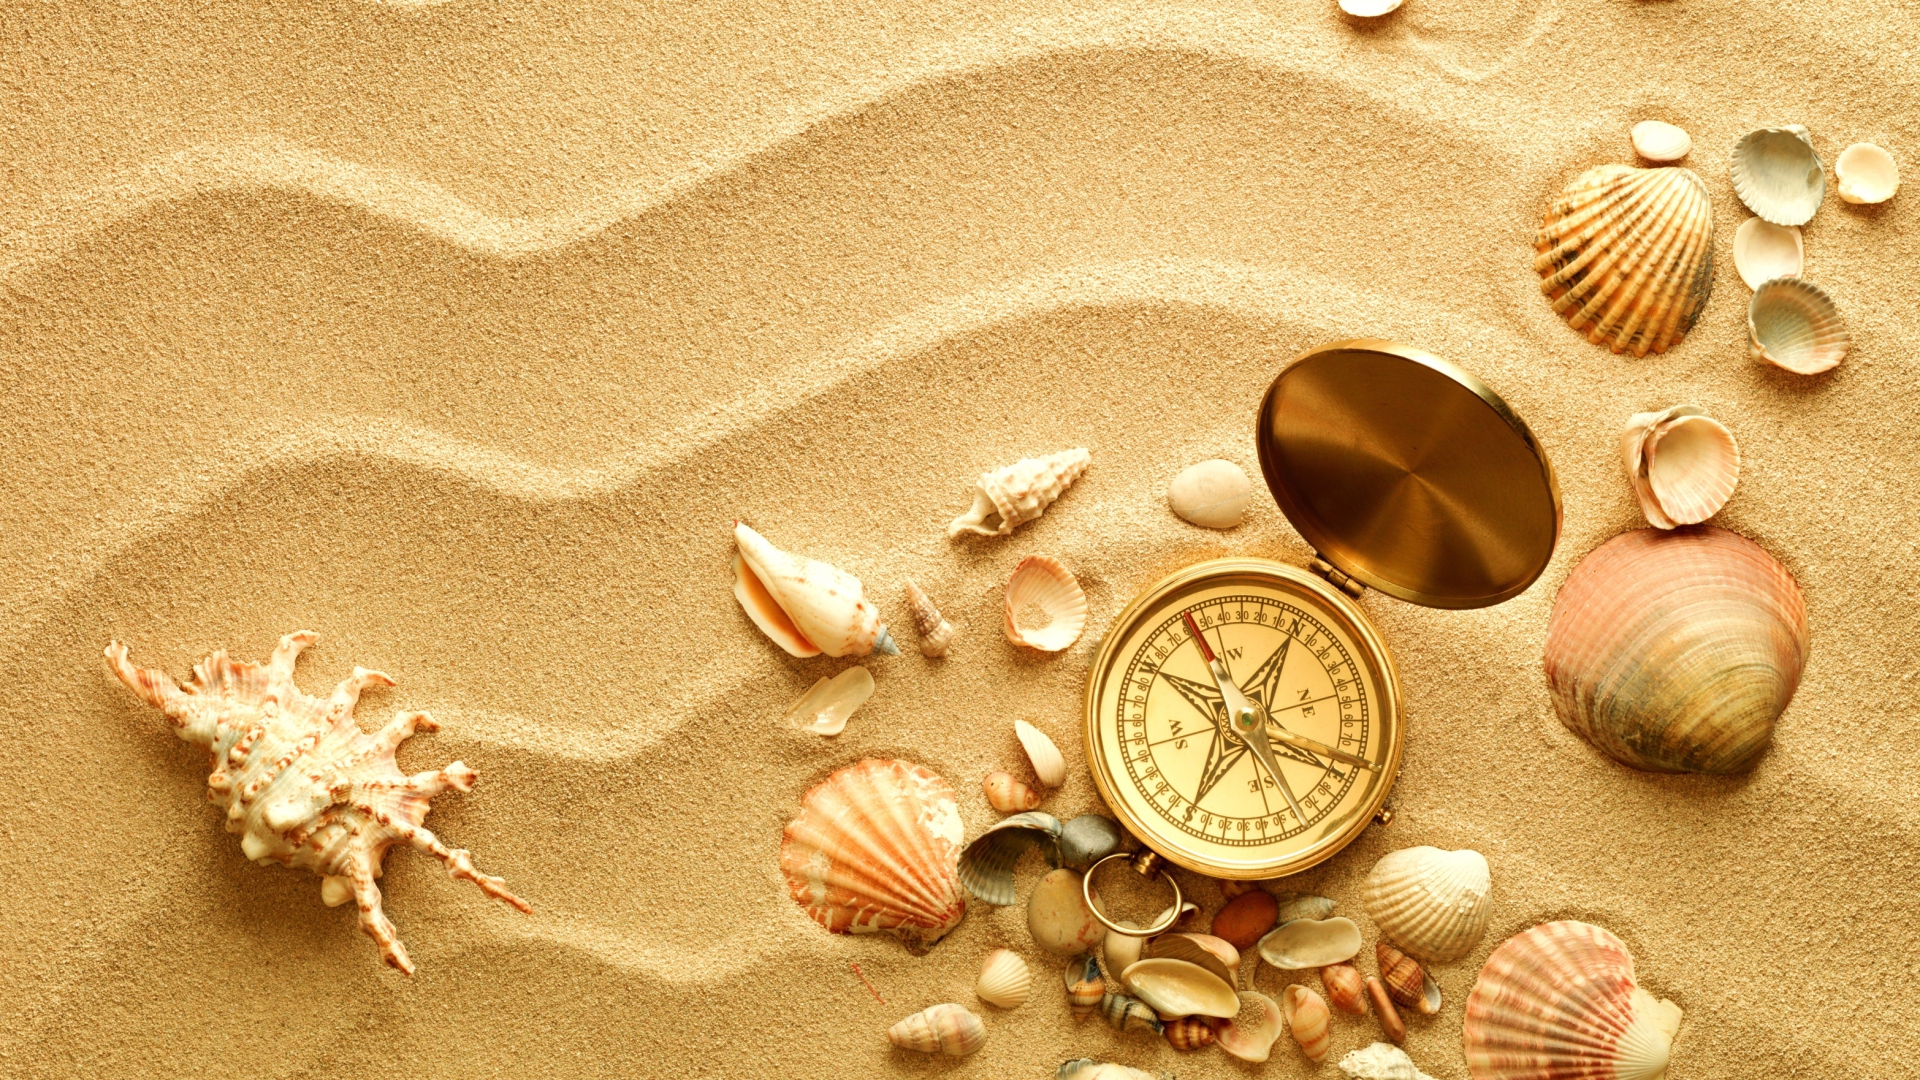 Обои Compass And Shells On Sand 1920x1080